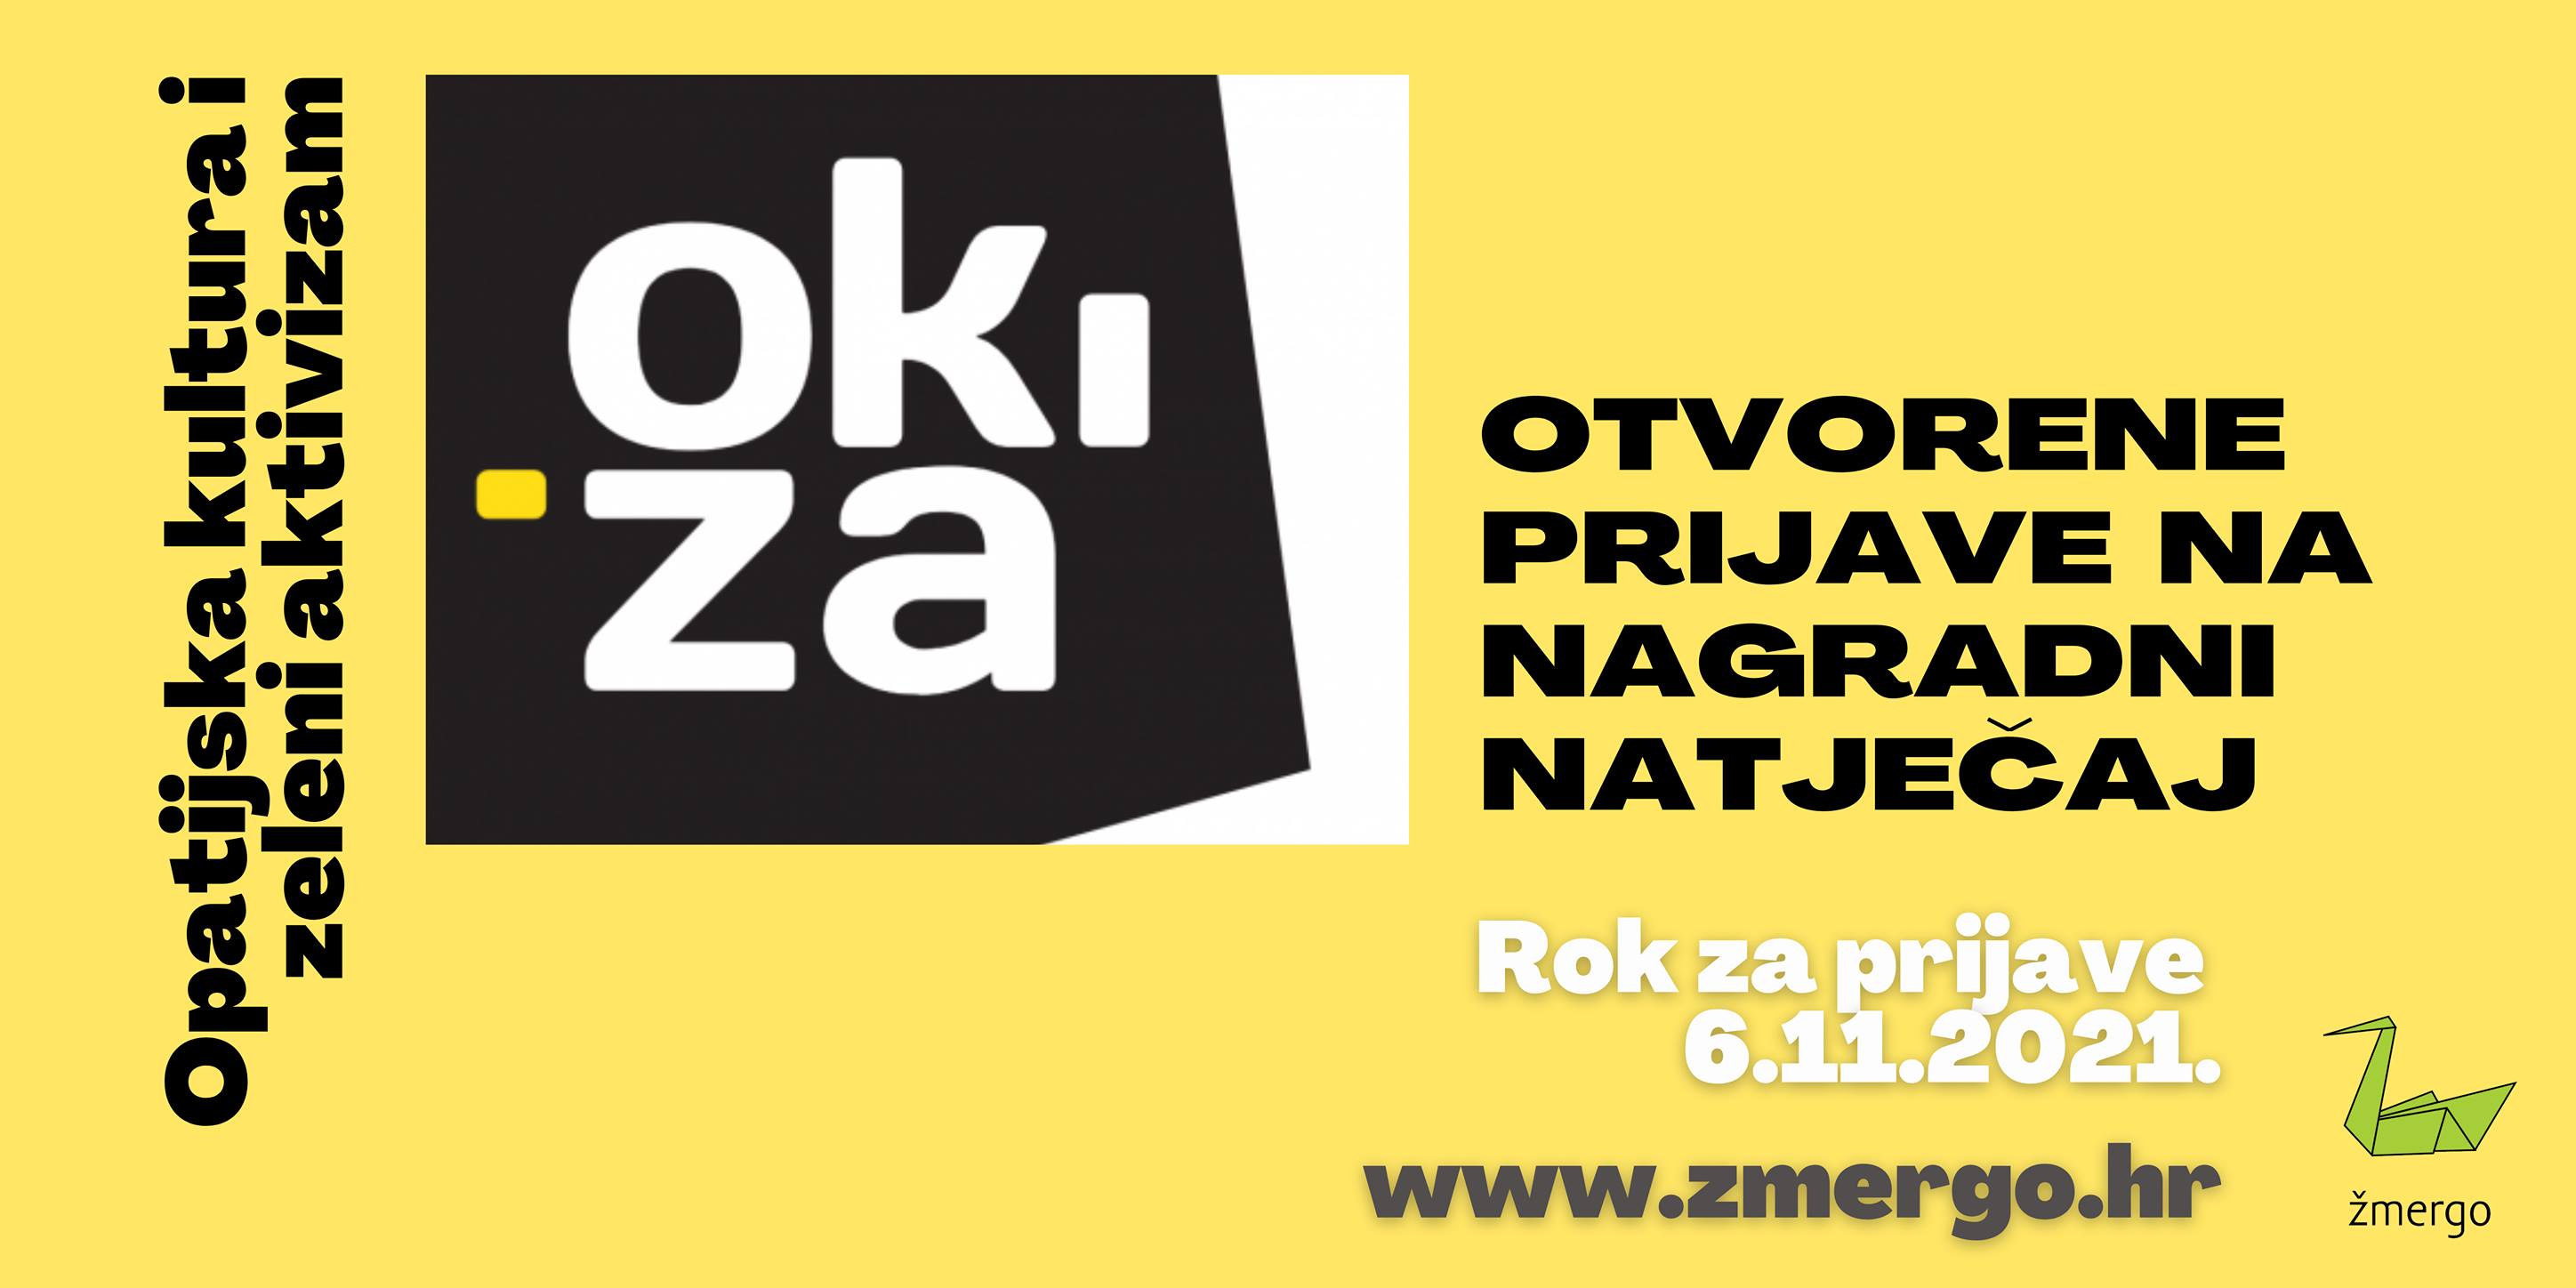 Udruga Žmergo pokrenula natječaj za kreativce OKiZA